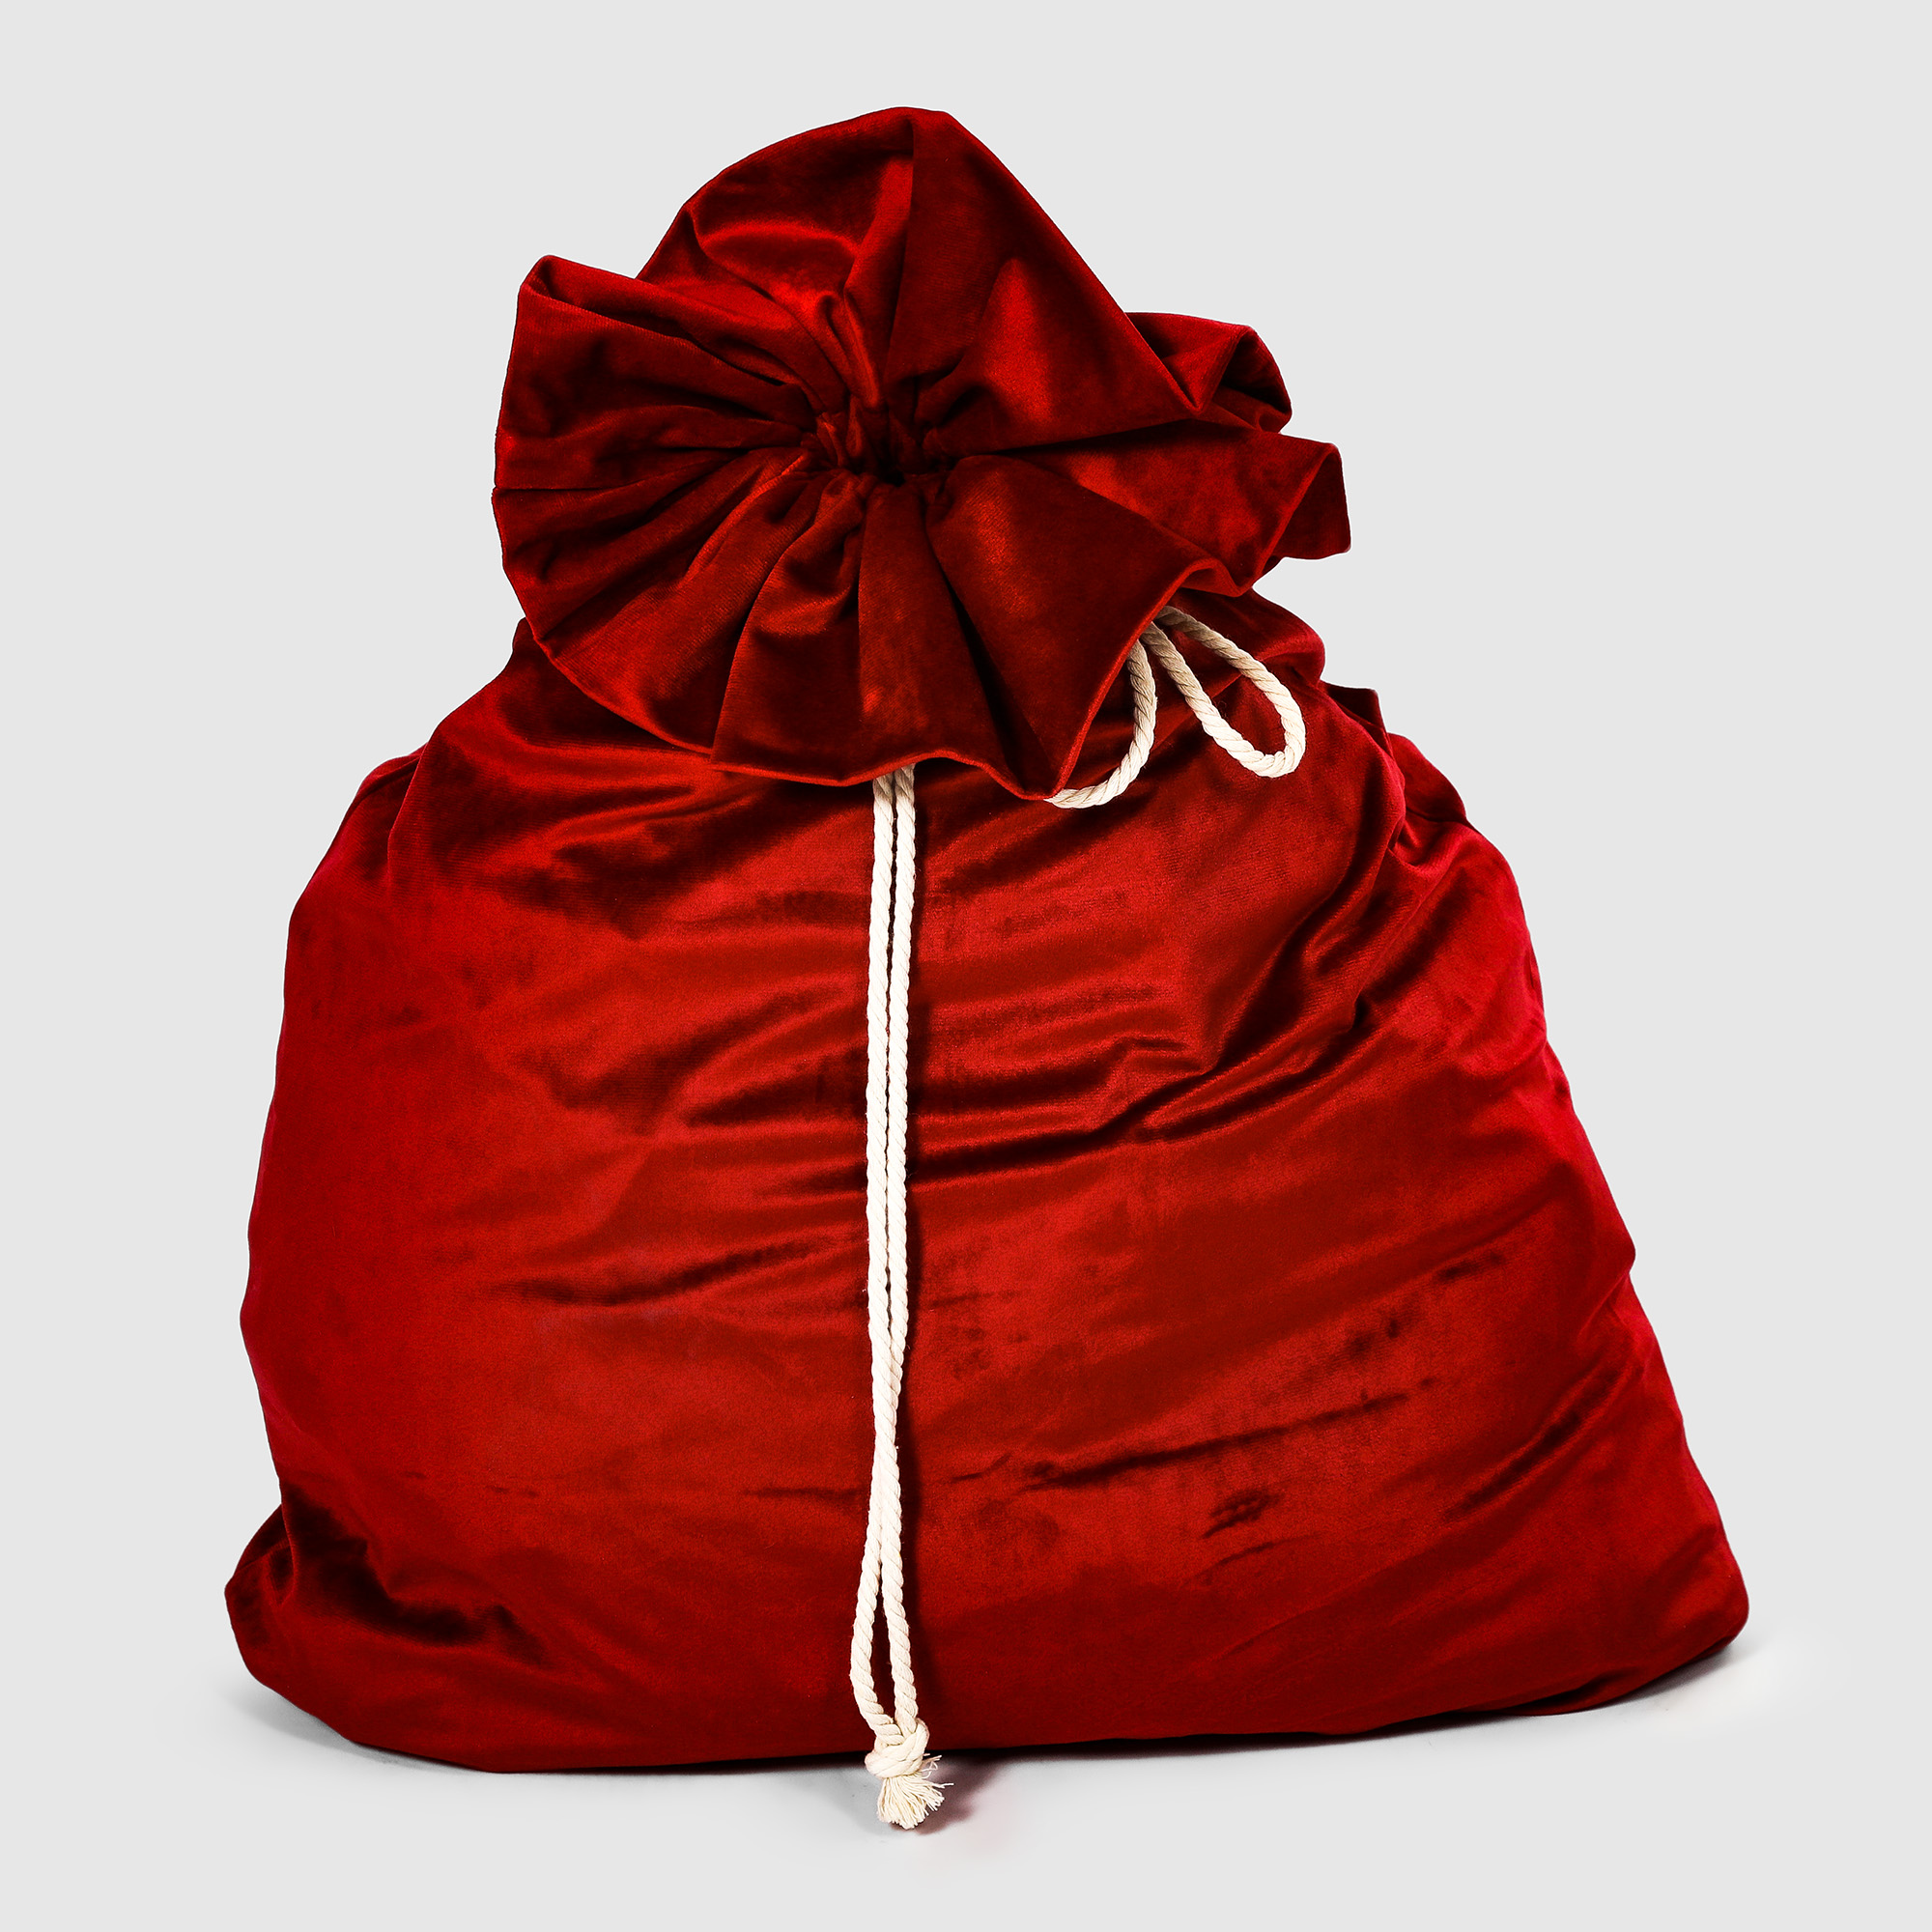 Мешок для подарков Bizzotto ny красный 60x100 см мешок для обуви на шнурке красный